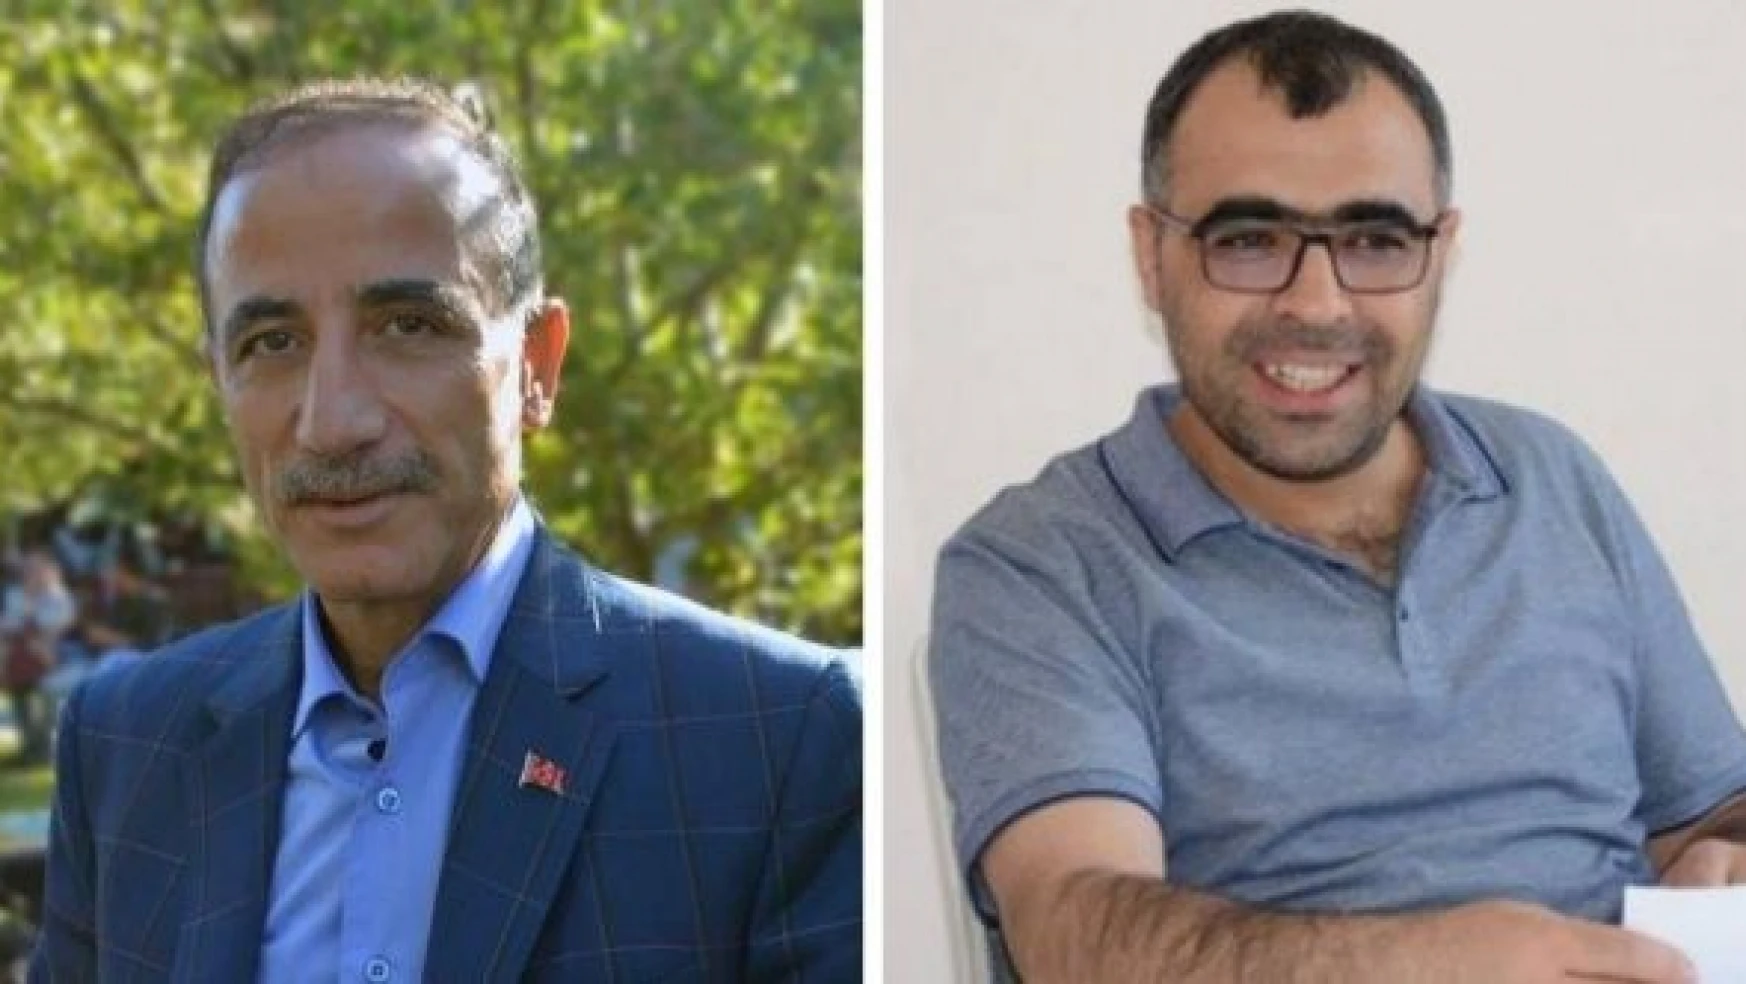 Bitlis Gazeteciler Cemiyeti Başkanı Sinan Aygül tutuklandı